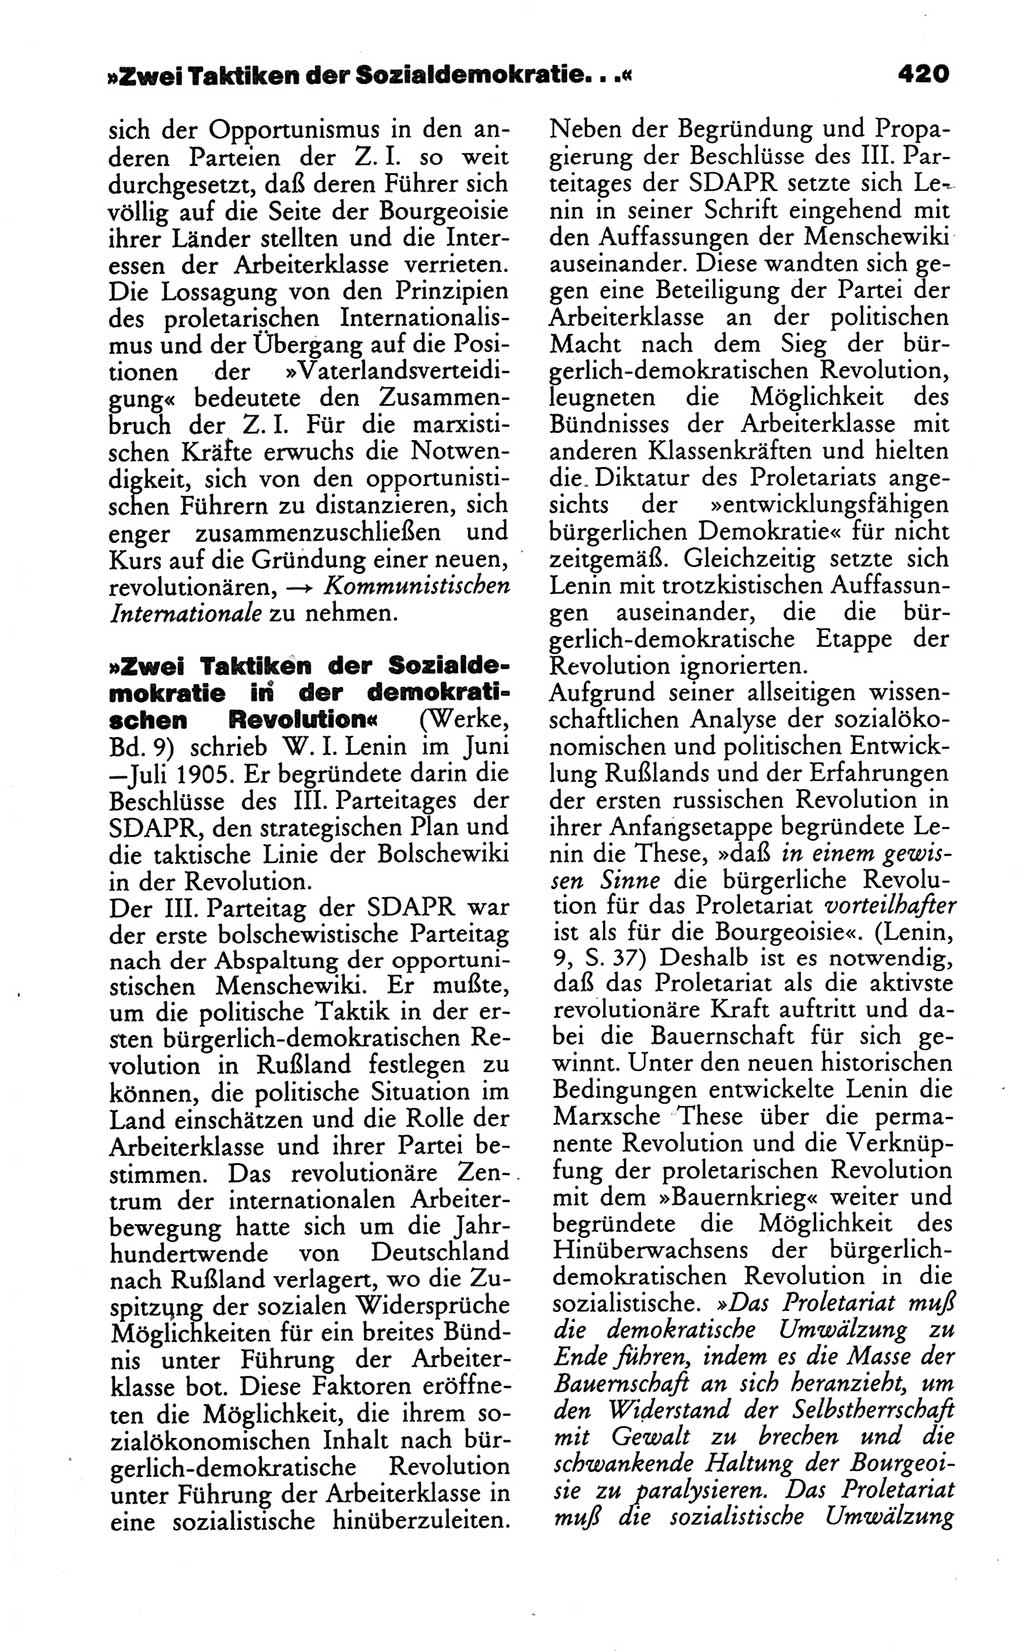 Wörterbuch des wissenschaftlichen Kommunismus [Deutsche Demokratische Republik (DDR)] 1986, Seite 420 (Wb. wiss. Komm. DDR 1986, S. 420)